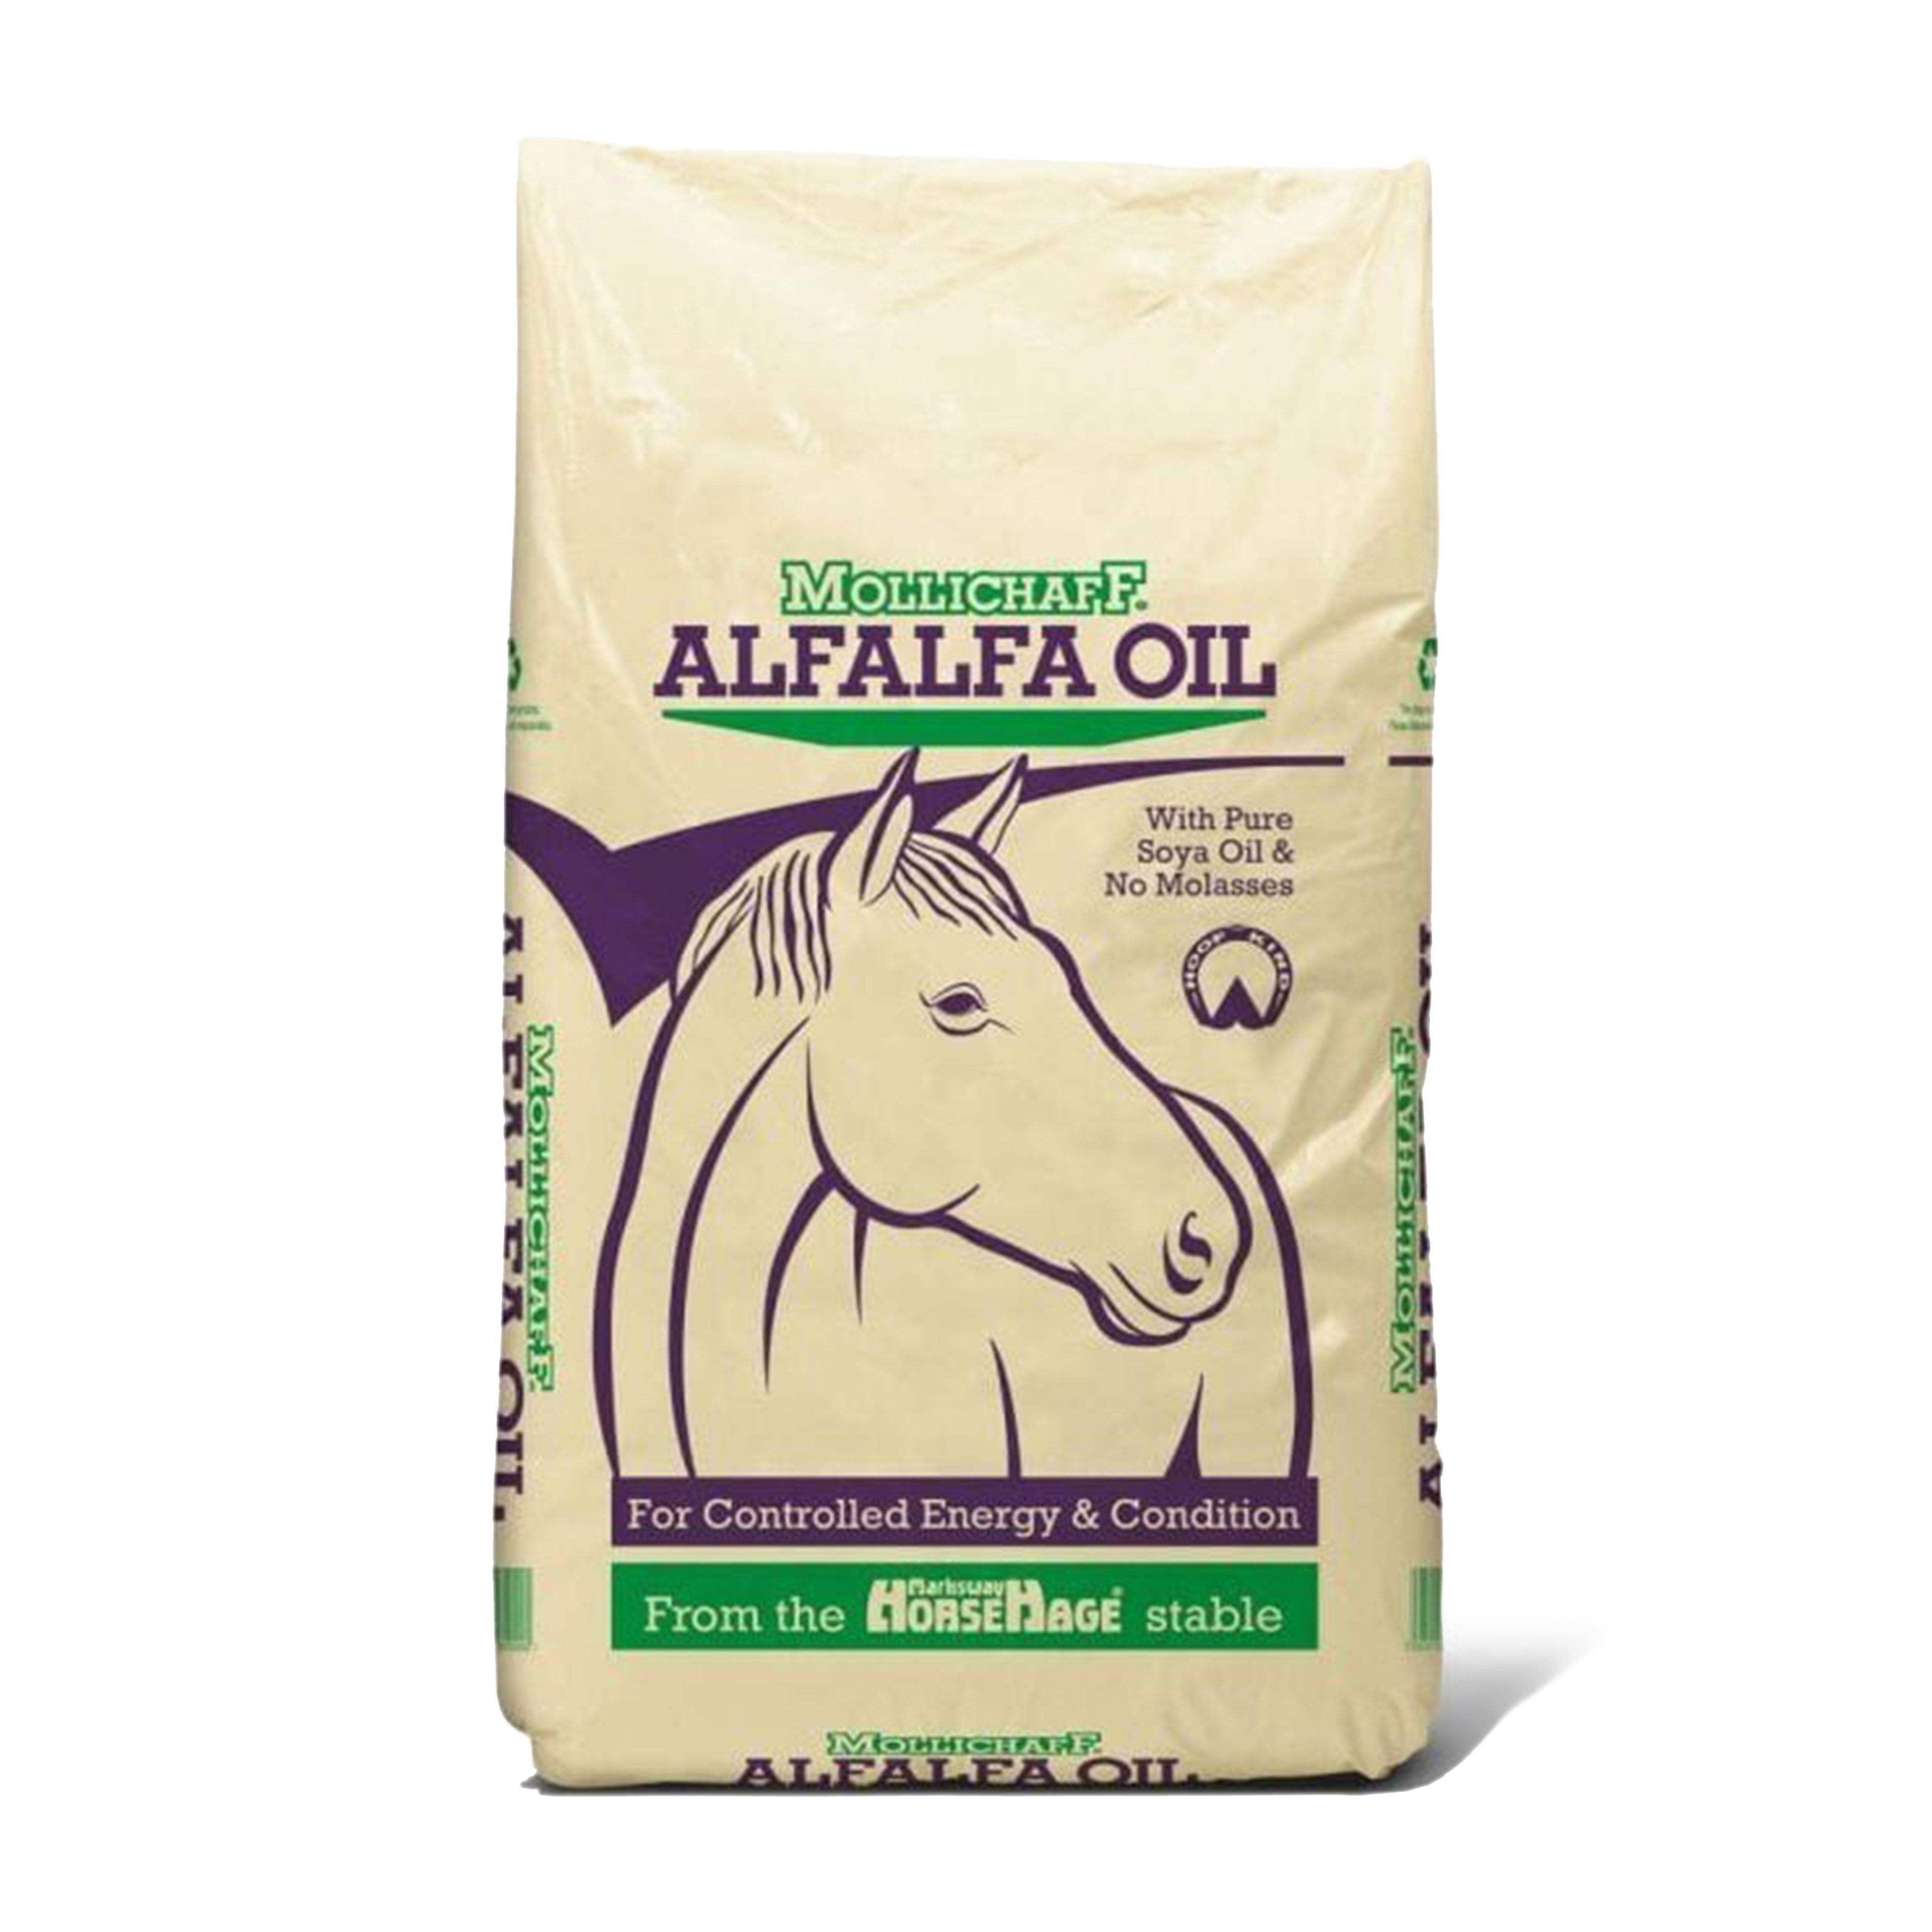 Alfalfa Oil